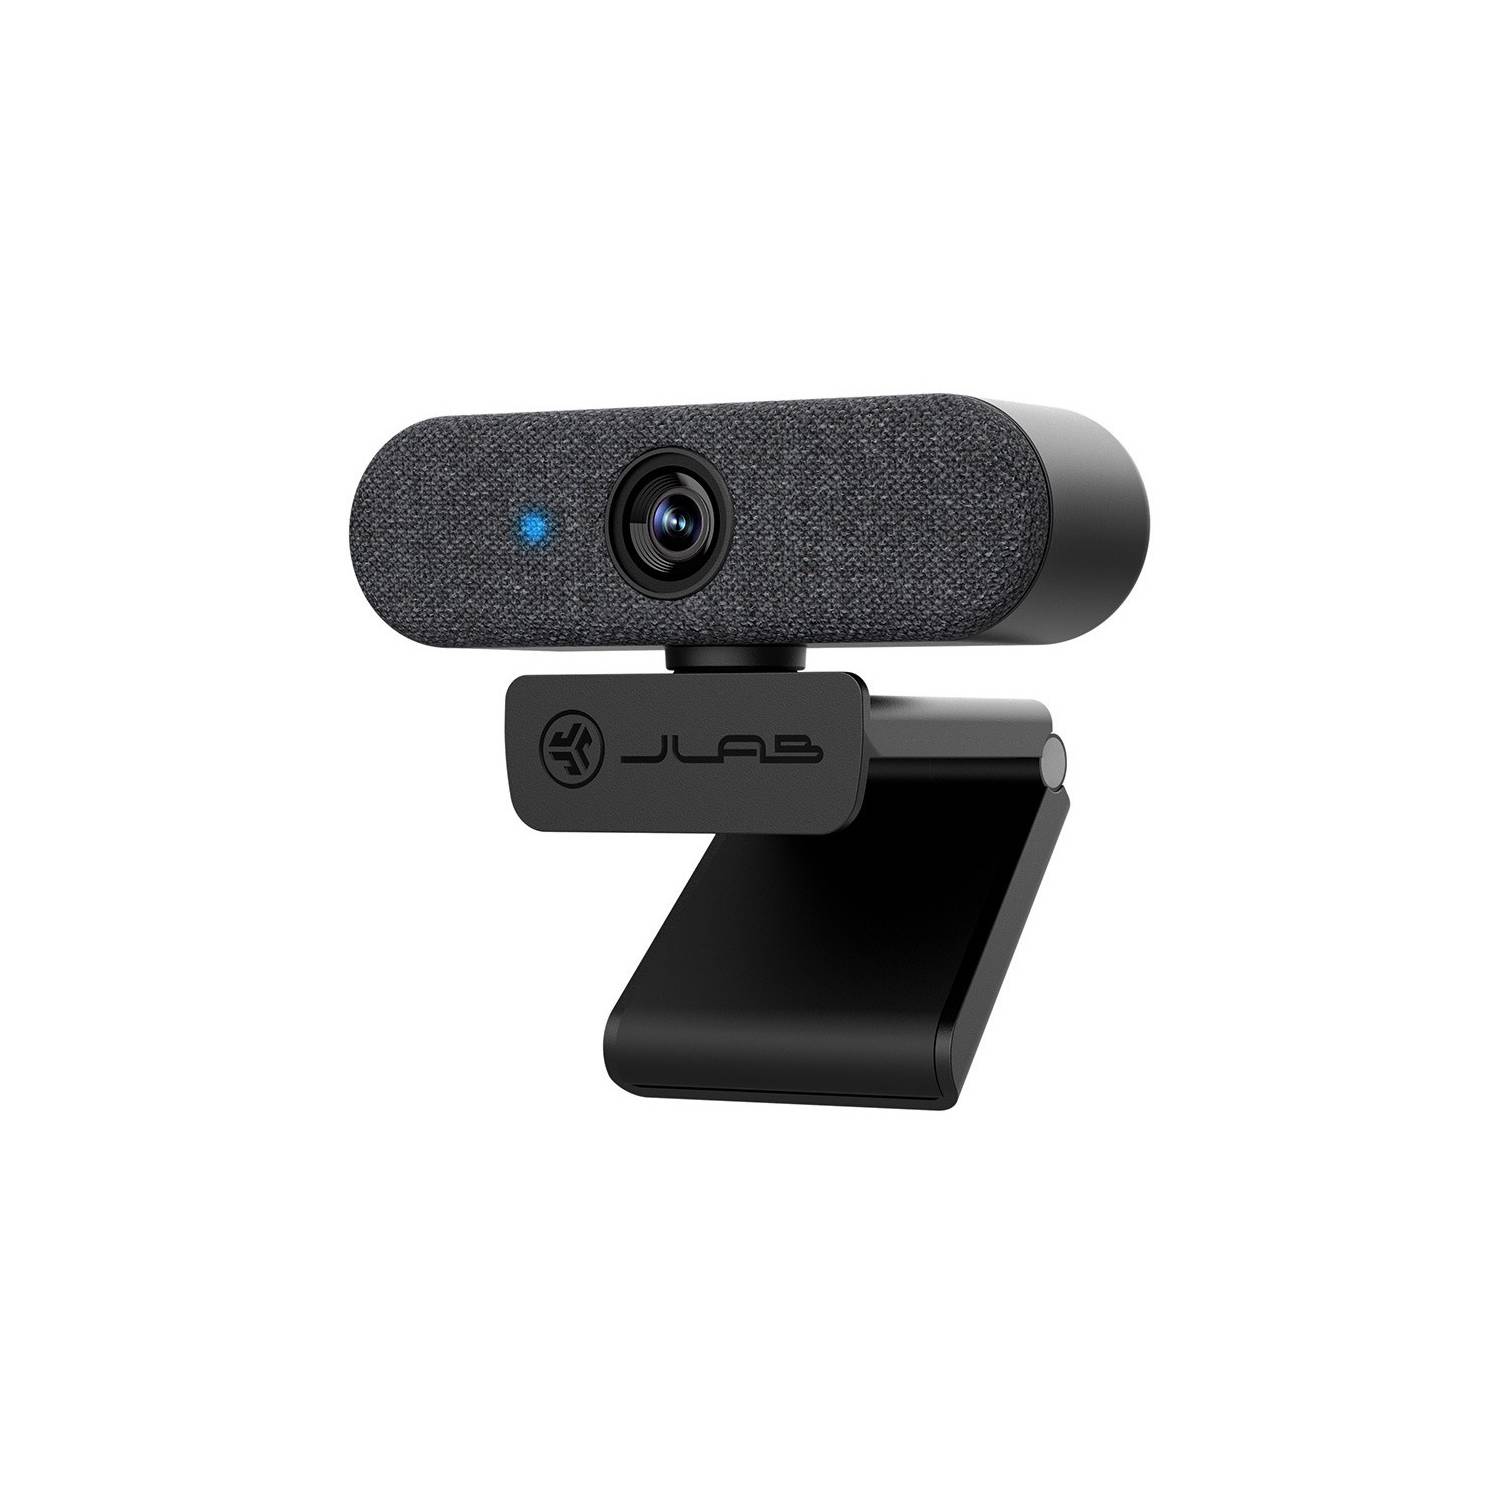  - Webcam Epic Cam 2k or 1080p/30 fps Jlab Negro 5